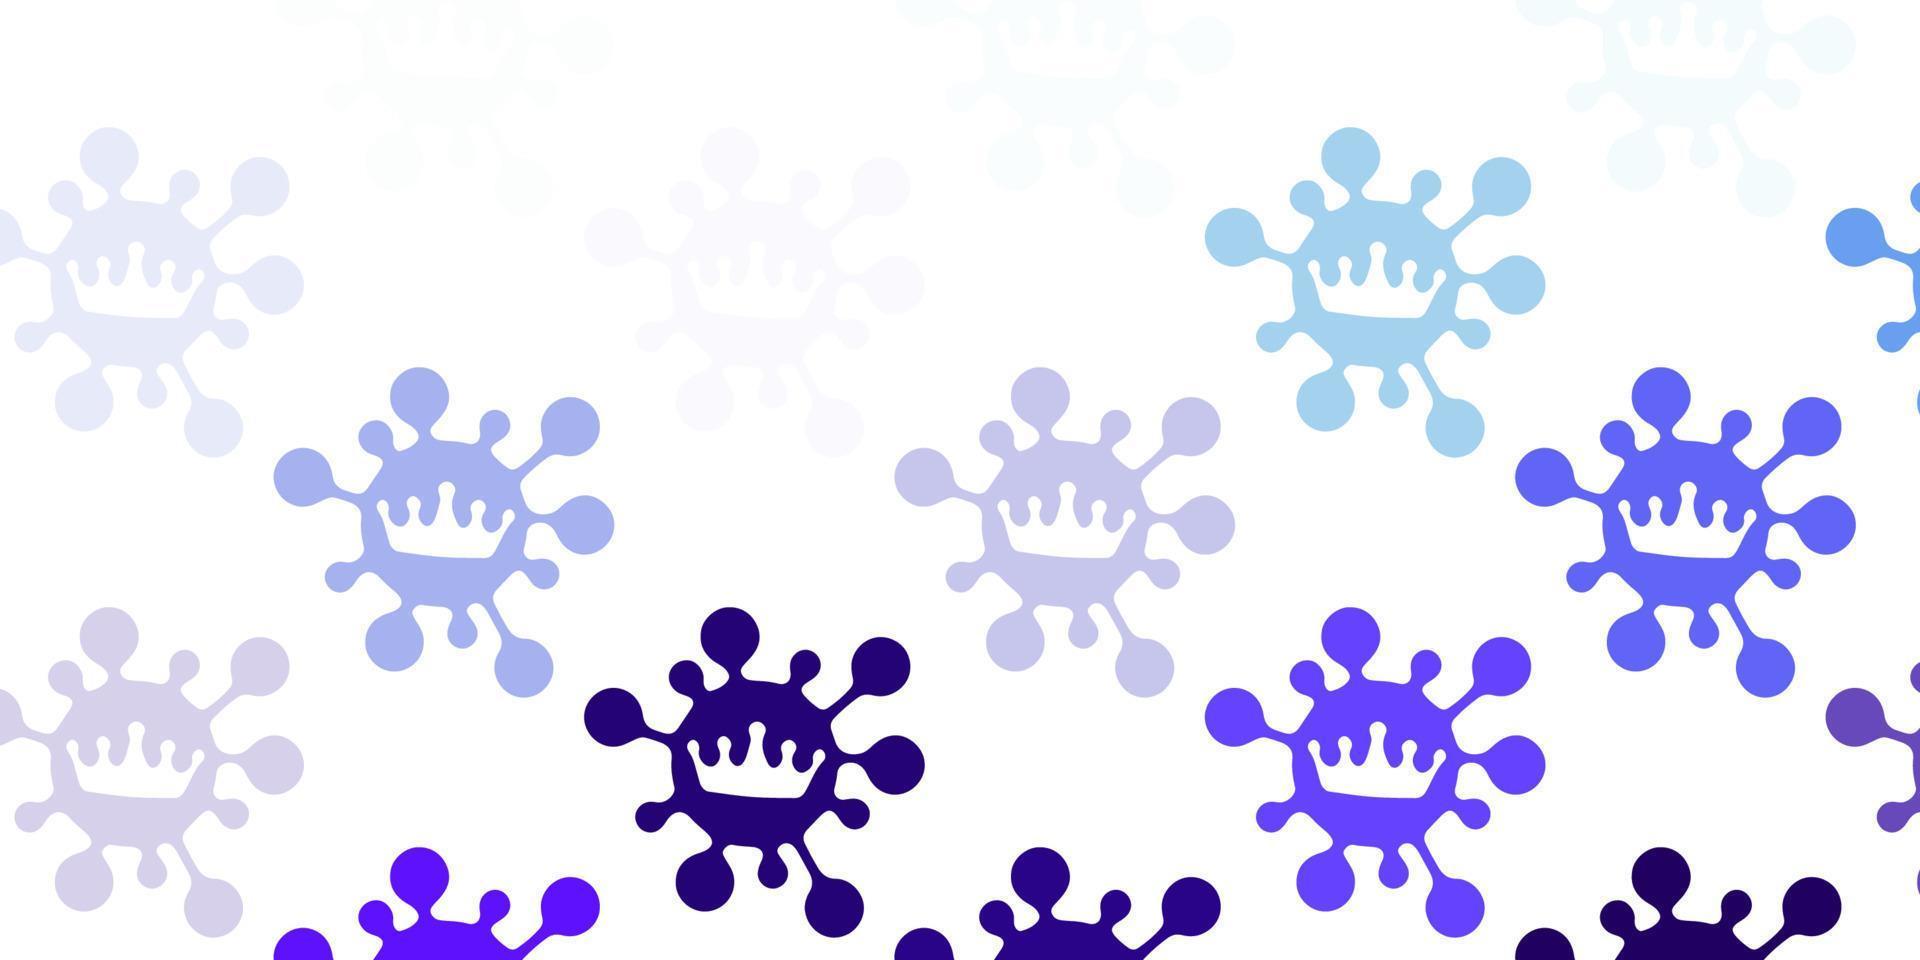 hellrosa, blaue Vektorschablone mit Grippezeichen. vektor